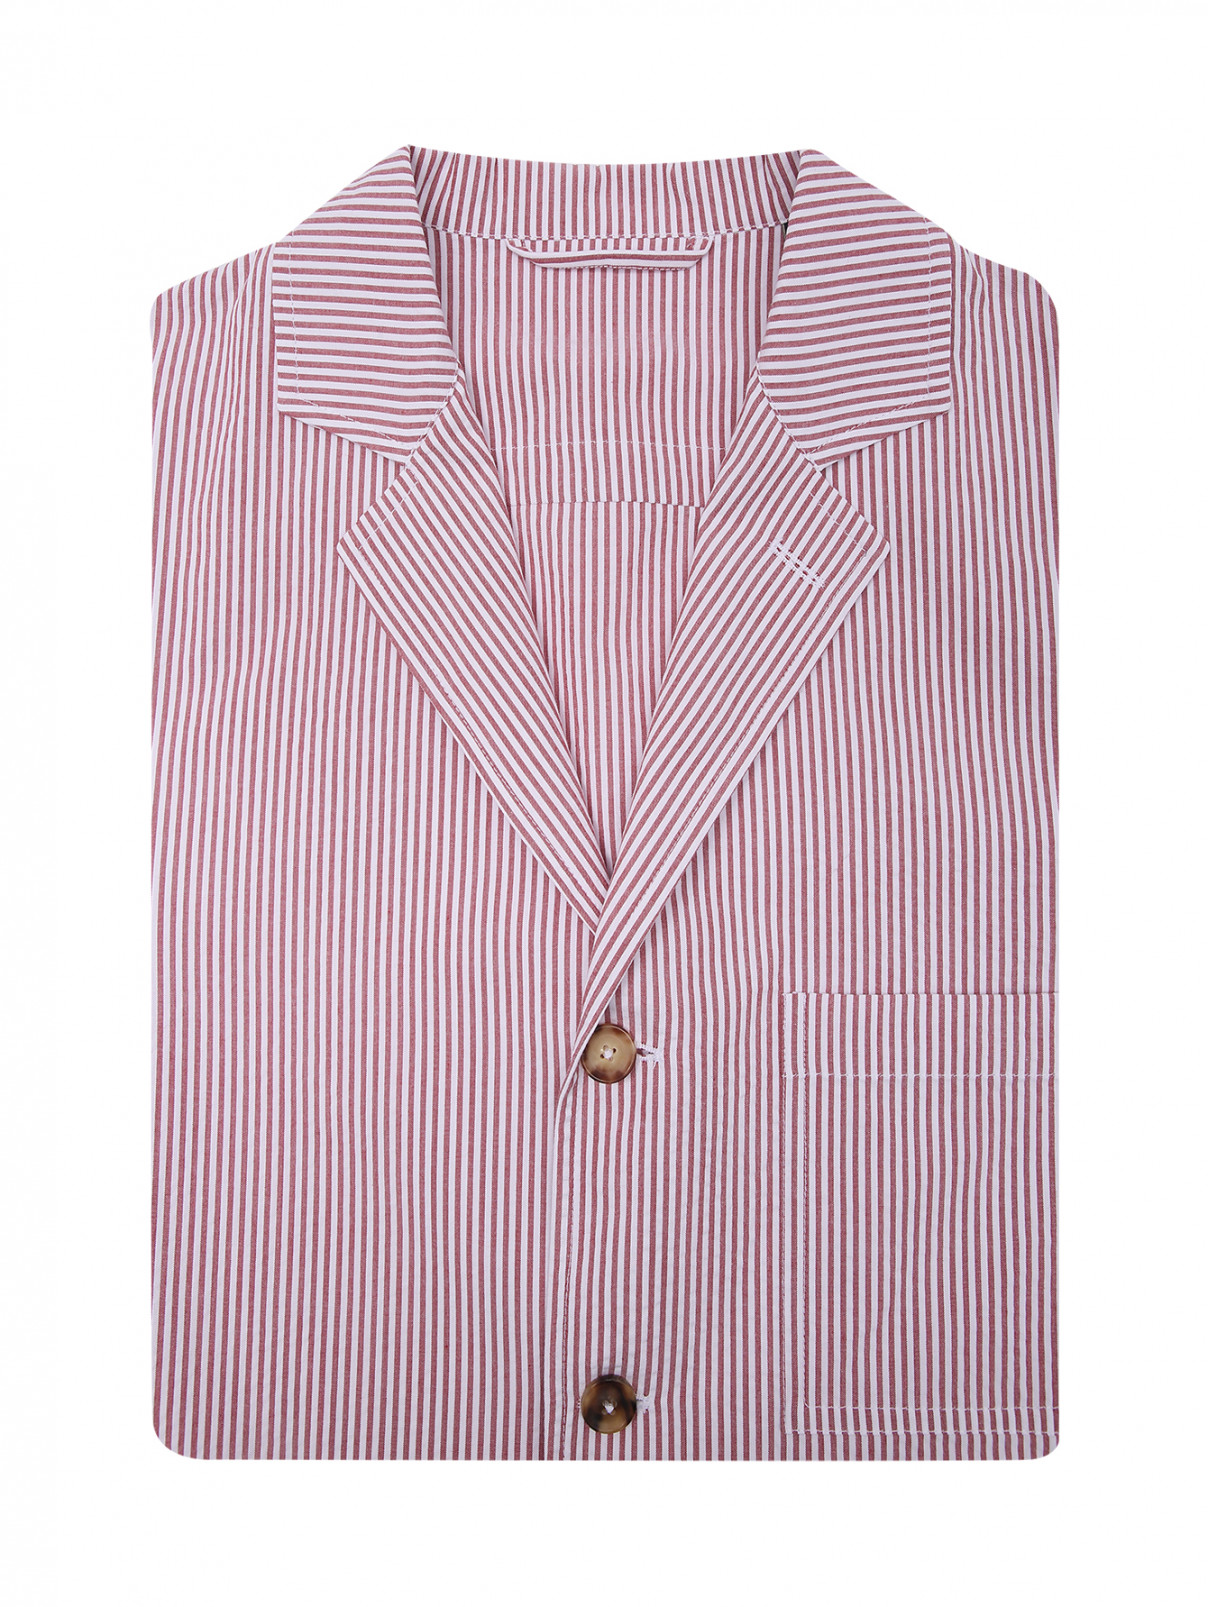 Рубашка из хлопка с узором полоска LARDINI  –  Общий вид  – Цвет:  Узор